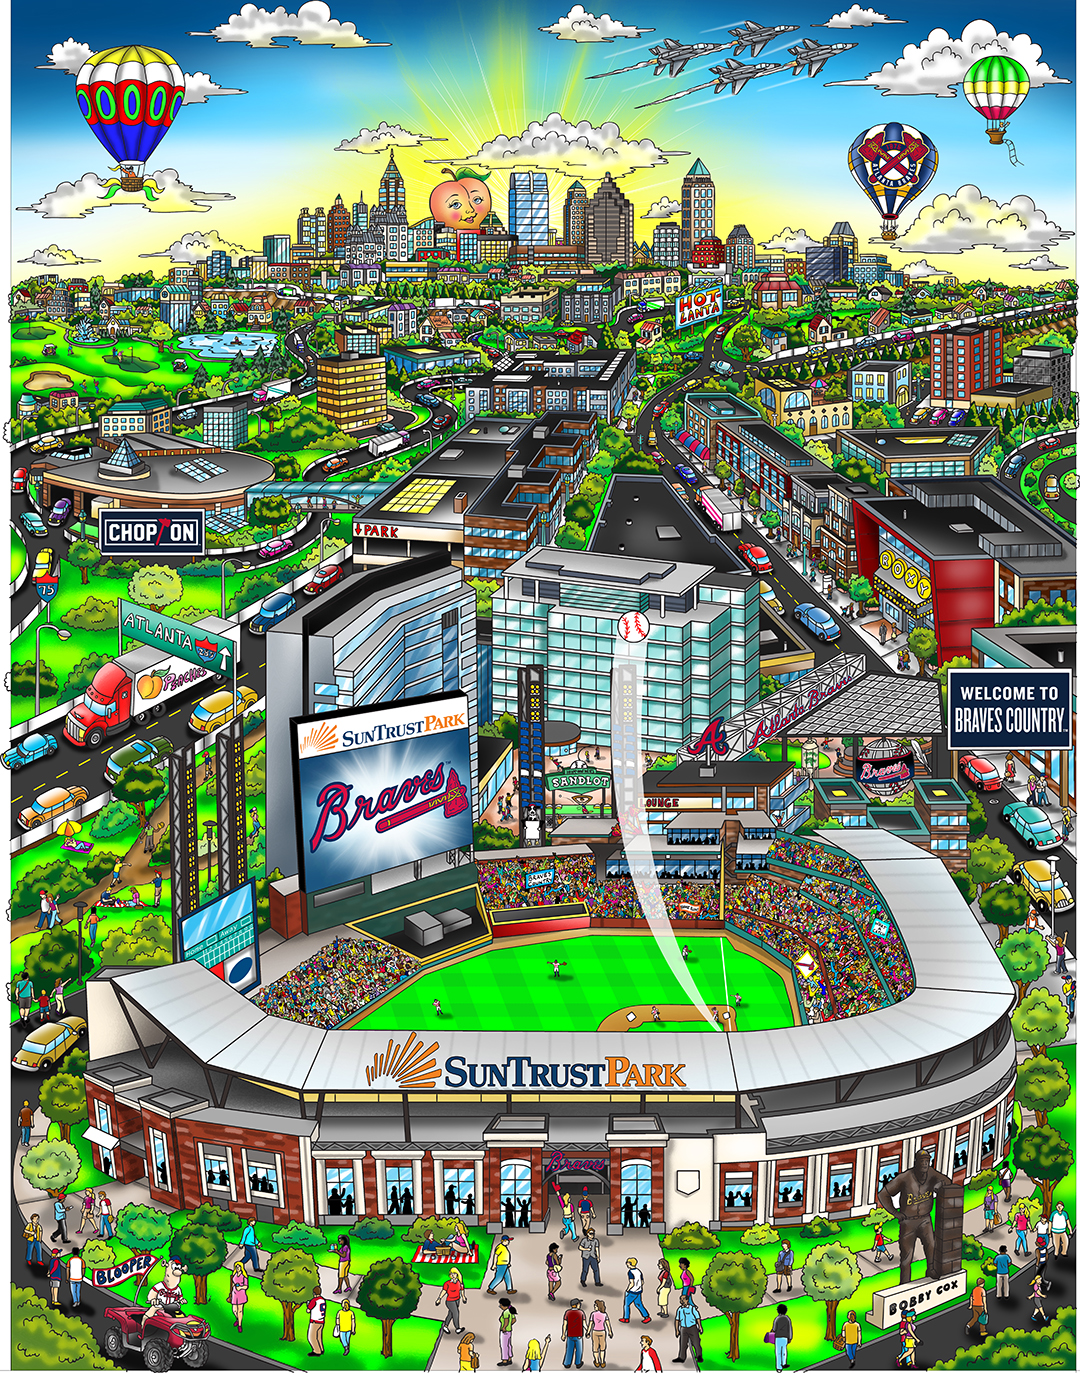 Officially Licensed MLB Atlanta Braves 3D Stadium Banner